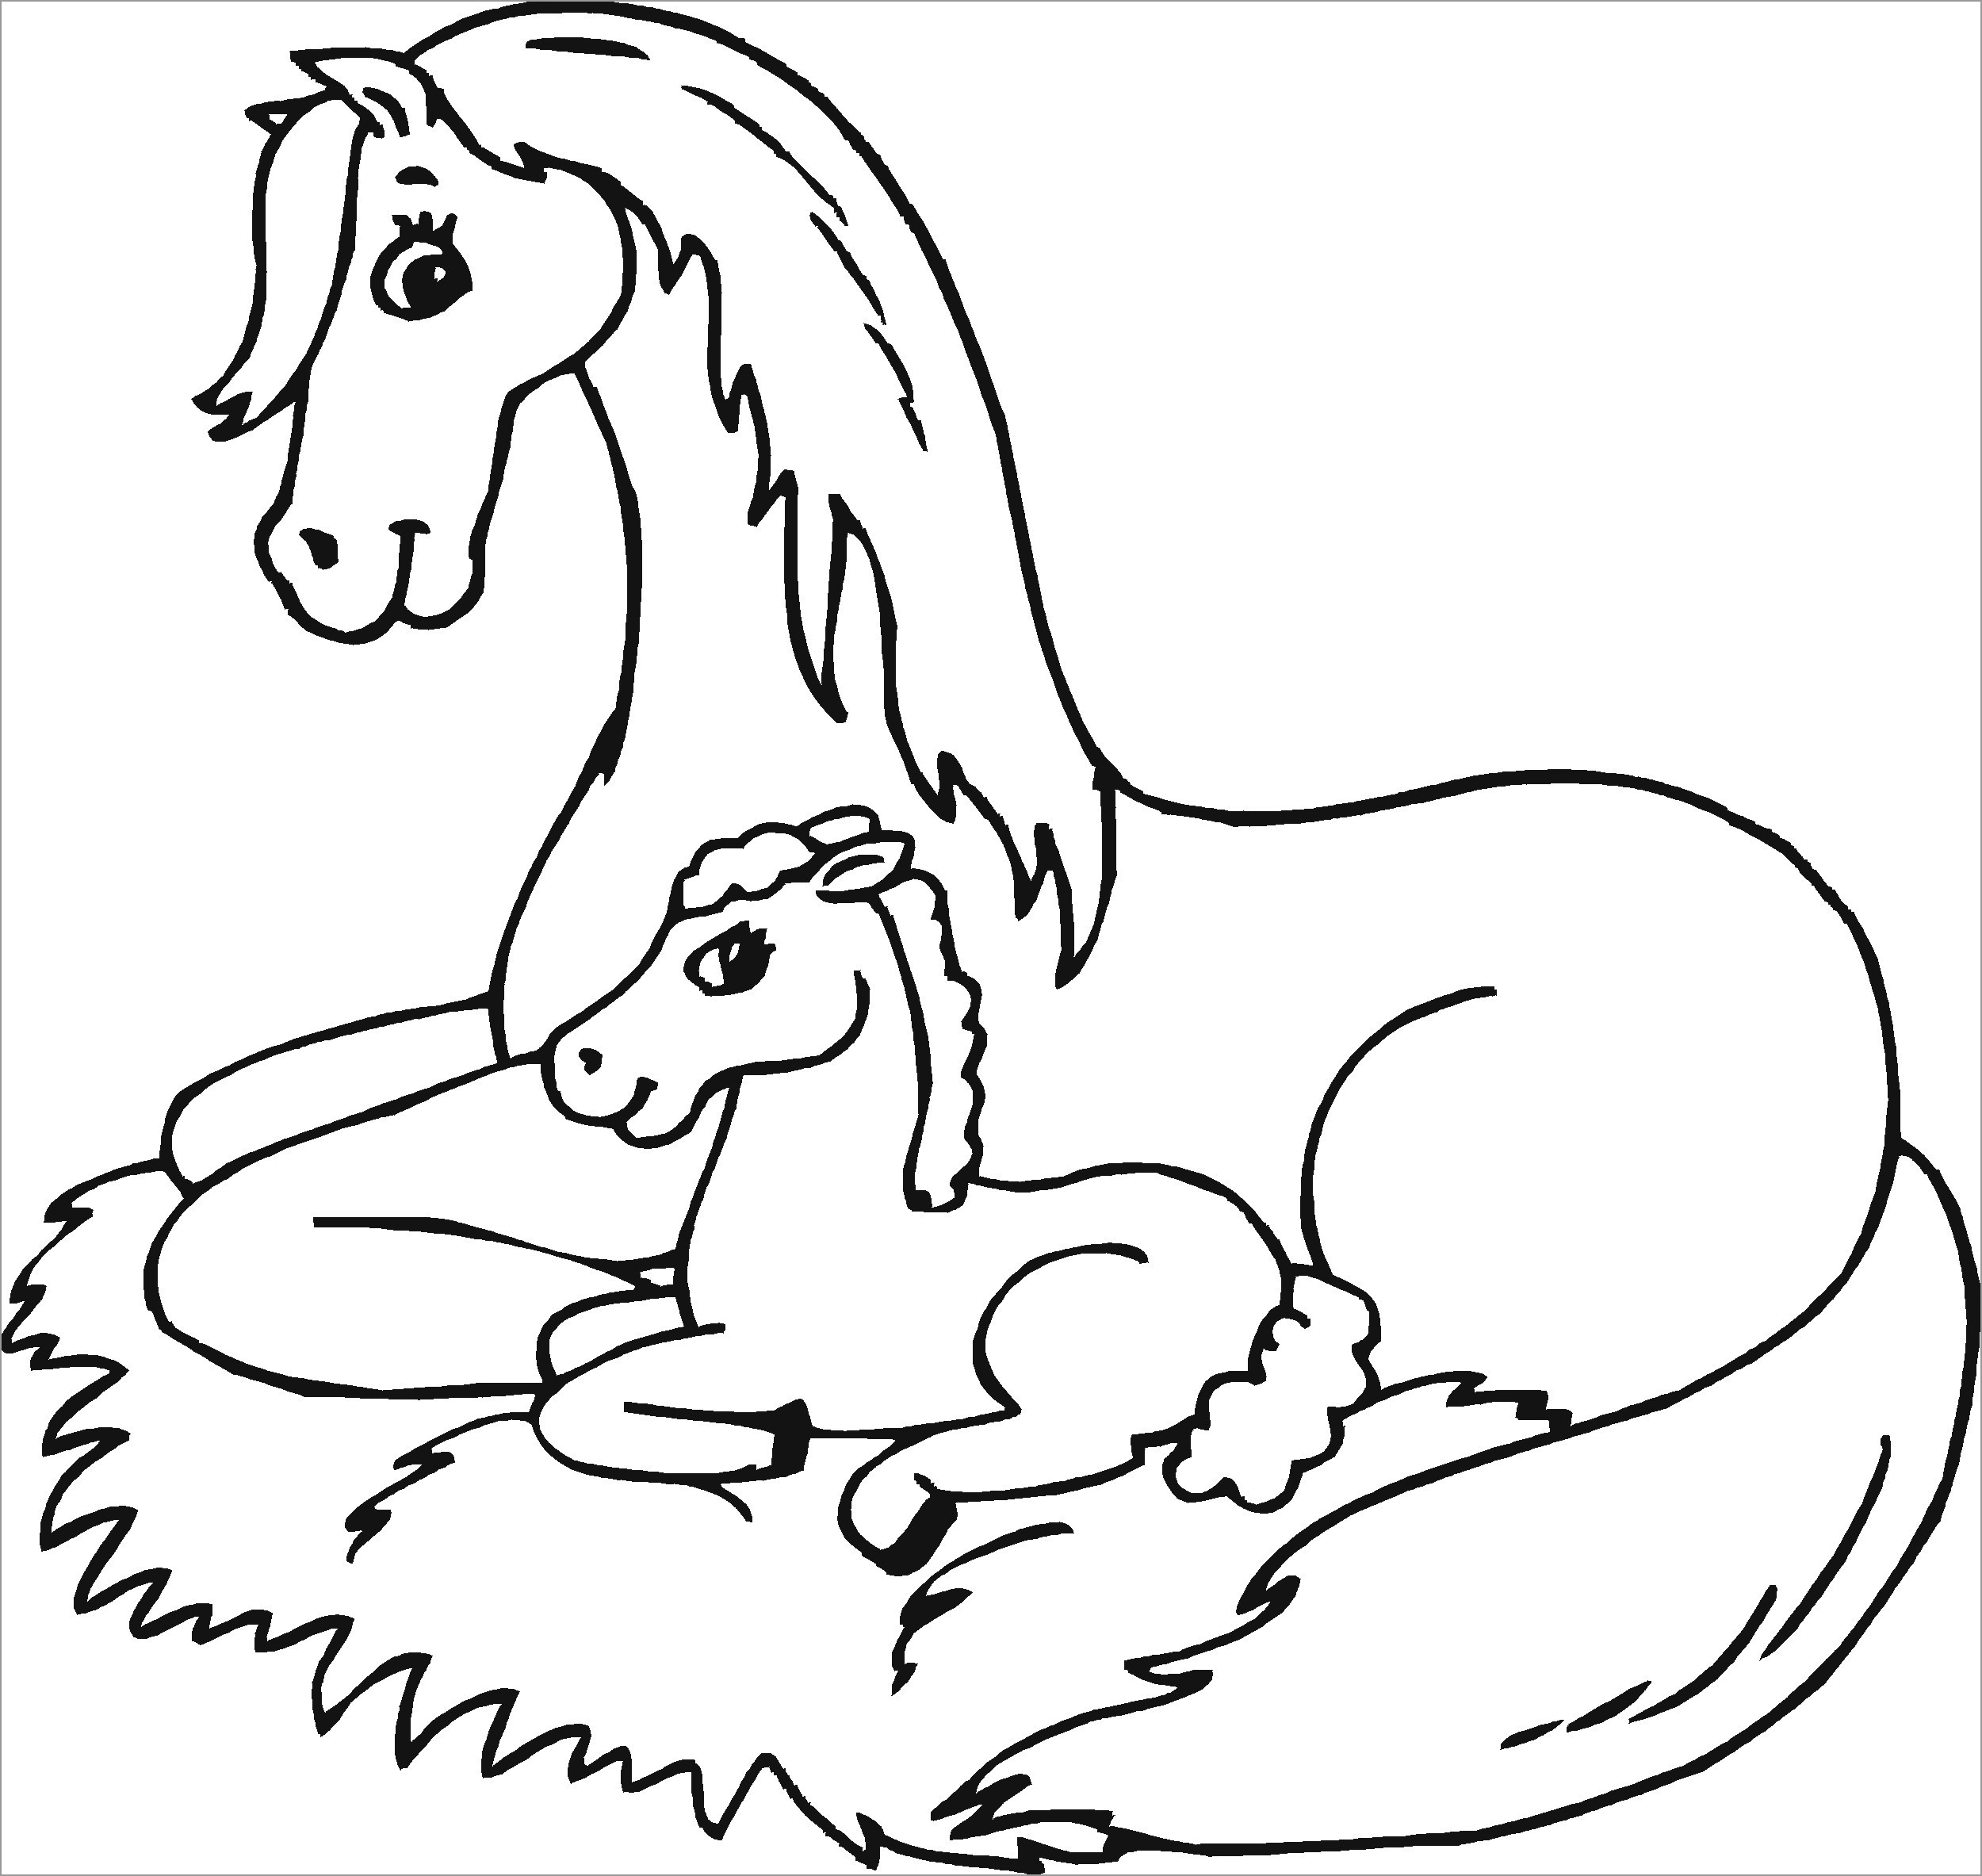 Раскрашиваем лошадку. Раскраска. Лошадка. Лошадь раскраска для детей. Лошадь раскраска для малышей. Раскраски лошадки для девочек.